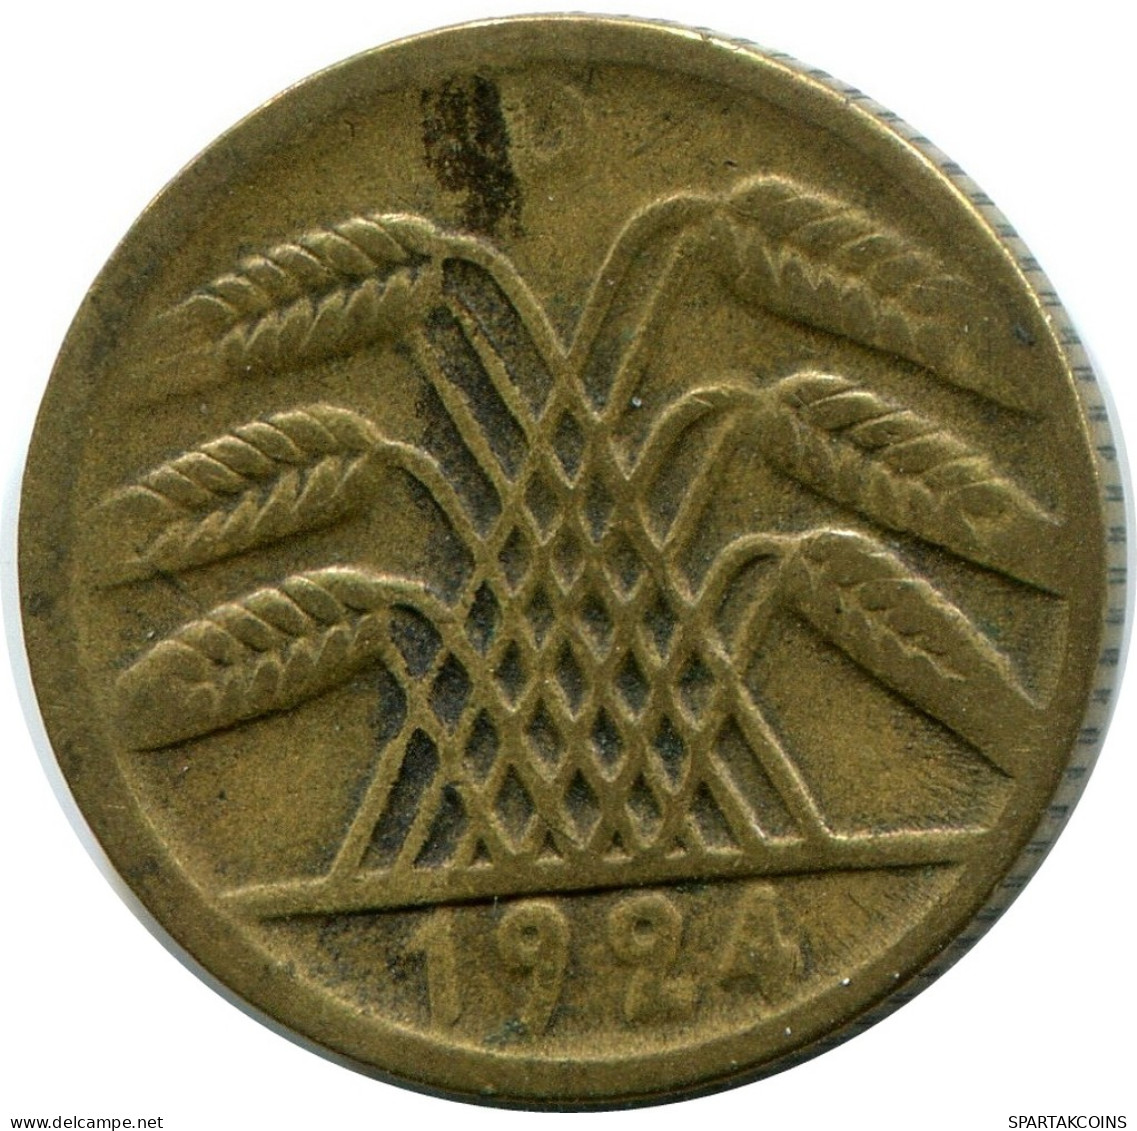 5 RENTENPFENNIG 1924 D ALEMANIA Moneda GERMANY #DB869.E - 5 Rentenpfennig & 5 Reichspfennig